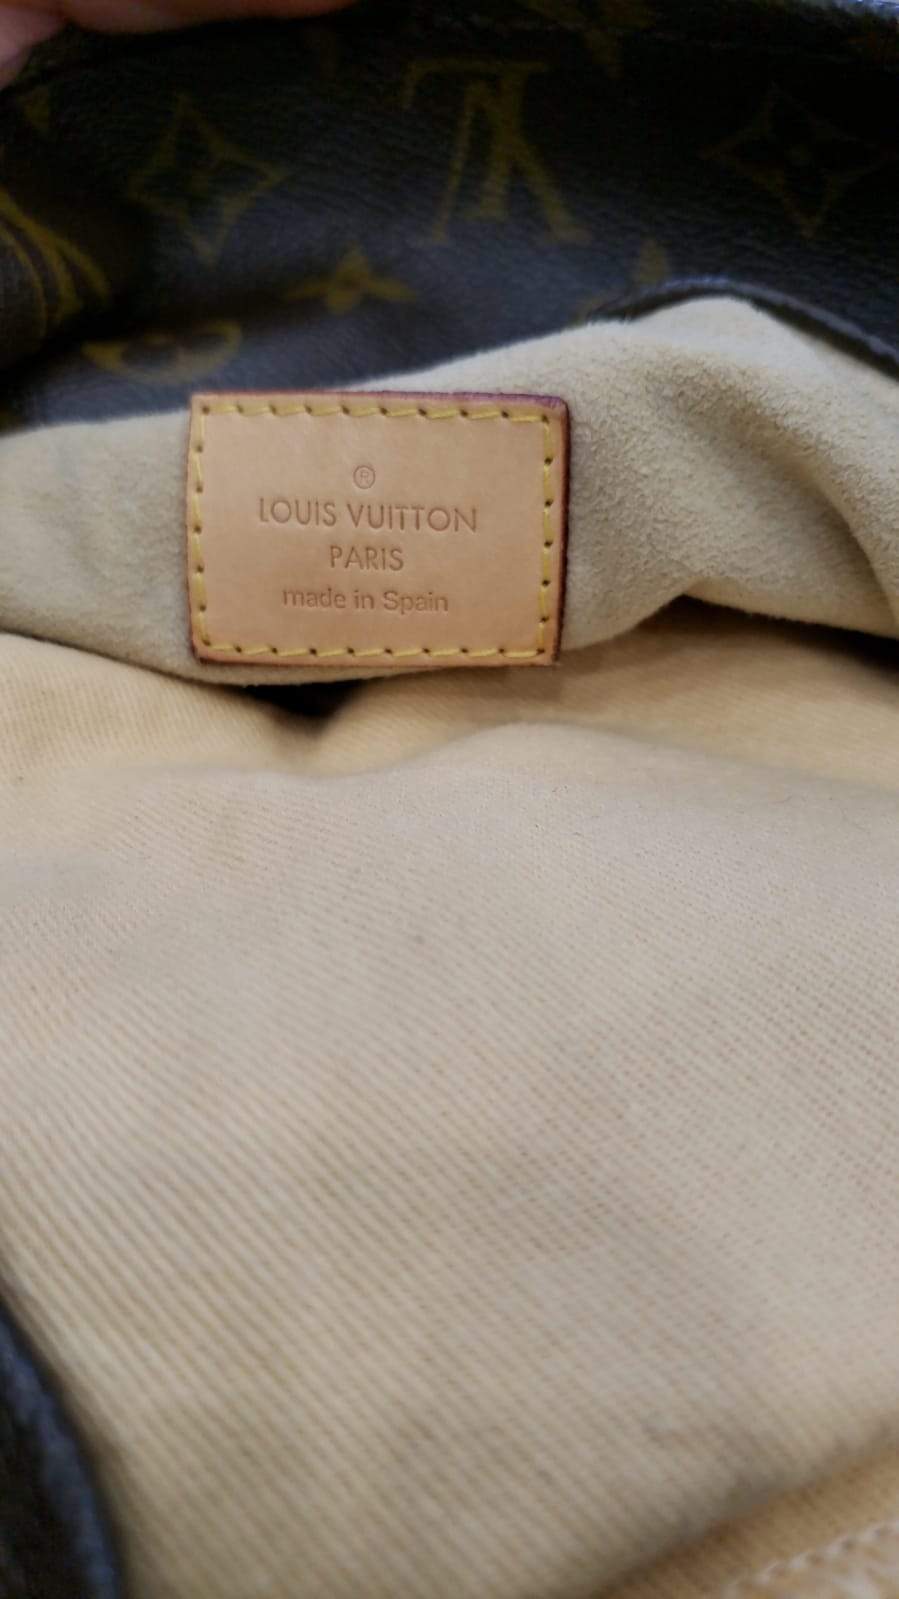 Louis Vuitton Brown Monogram Canvas Artsy MM Bag – Boutique LUC.S